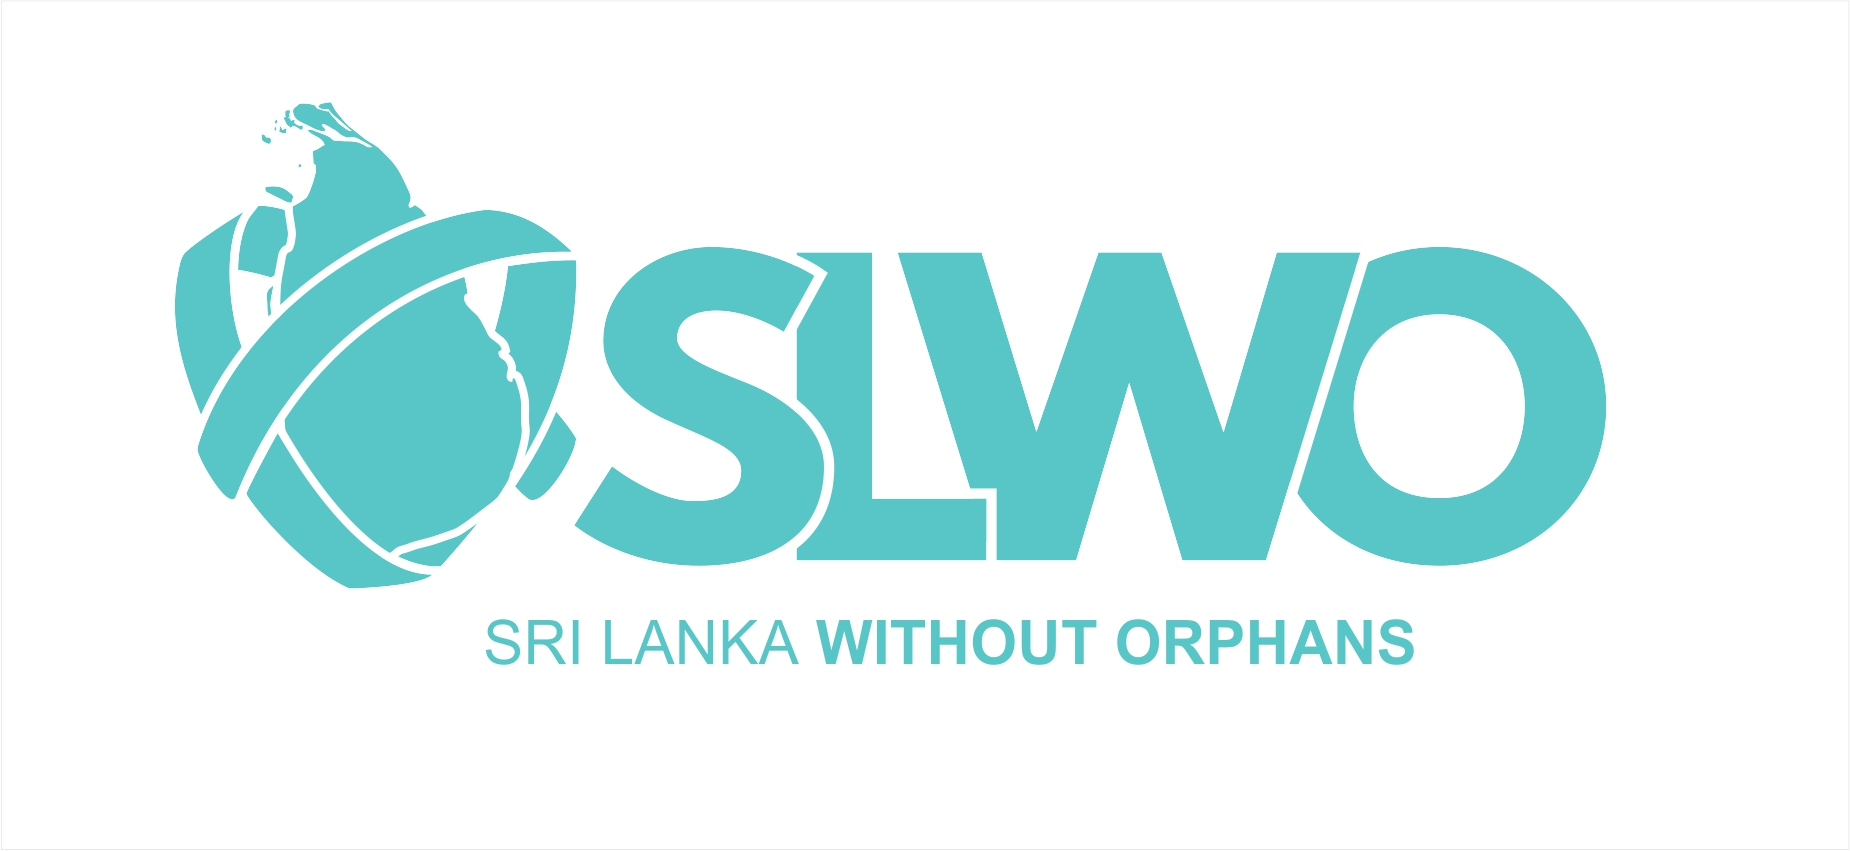 Sri Lanka World Without Orphans logo